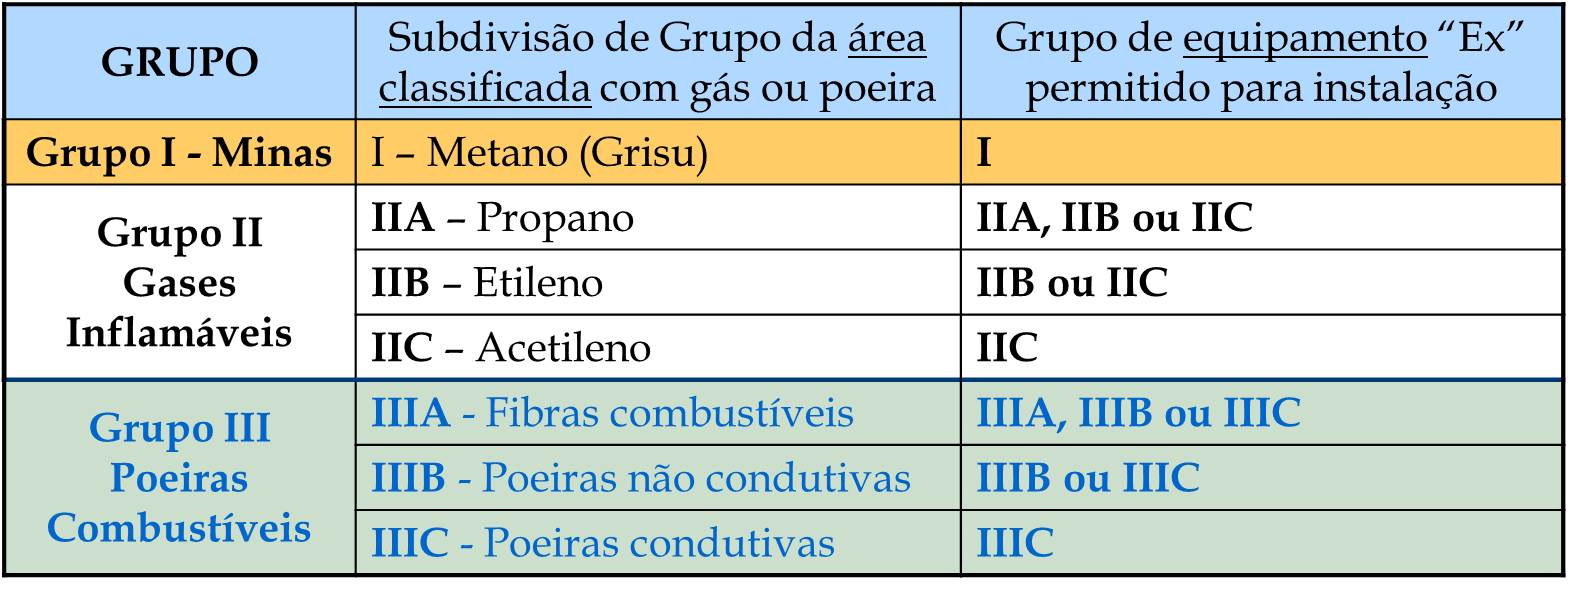 Relação entre subdivisão do GRUPO de gás ou poeiras e os grupos de equipamento "Ex" permitidos.